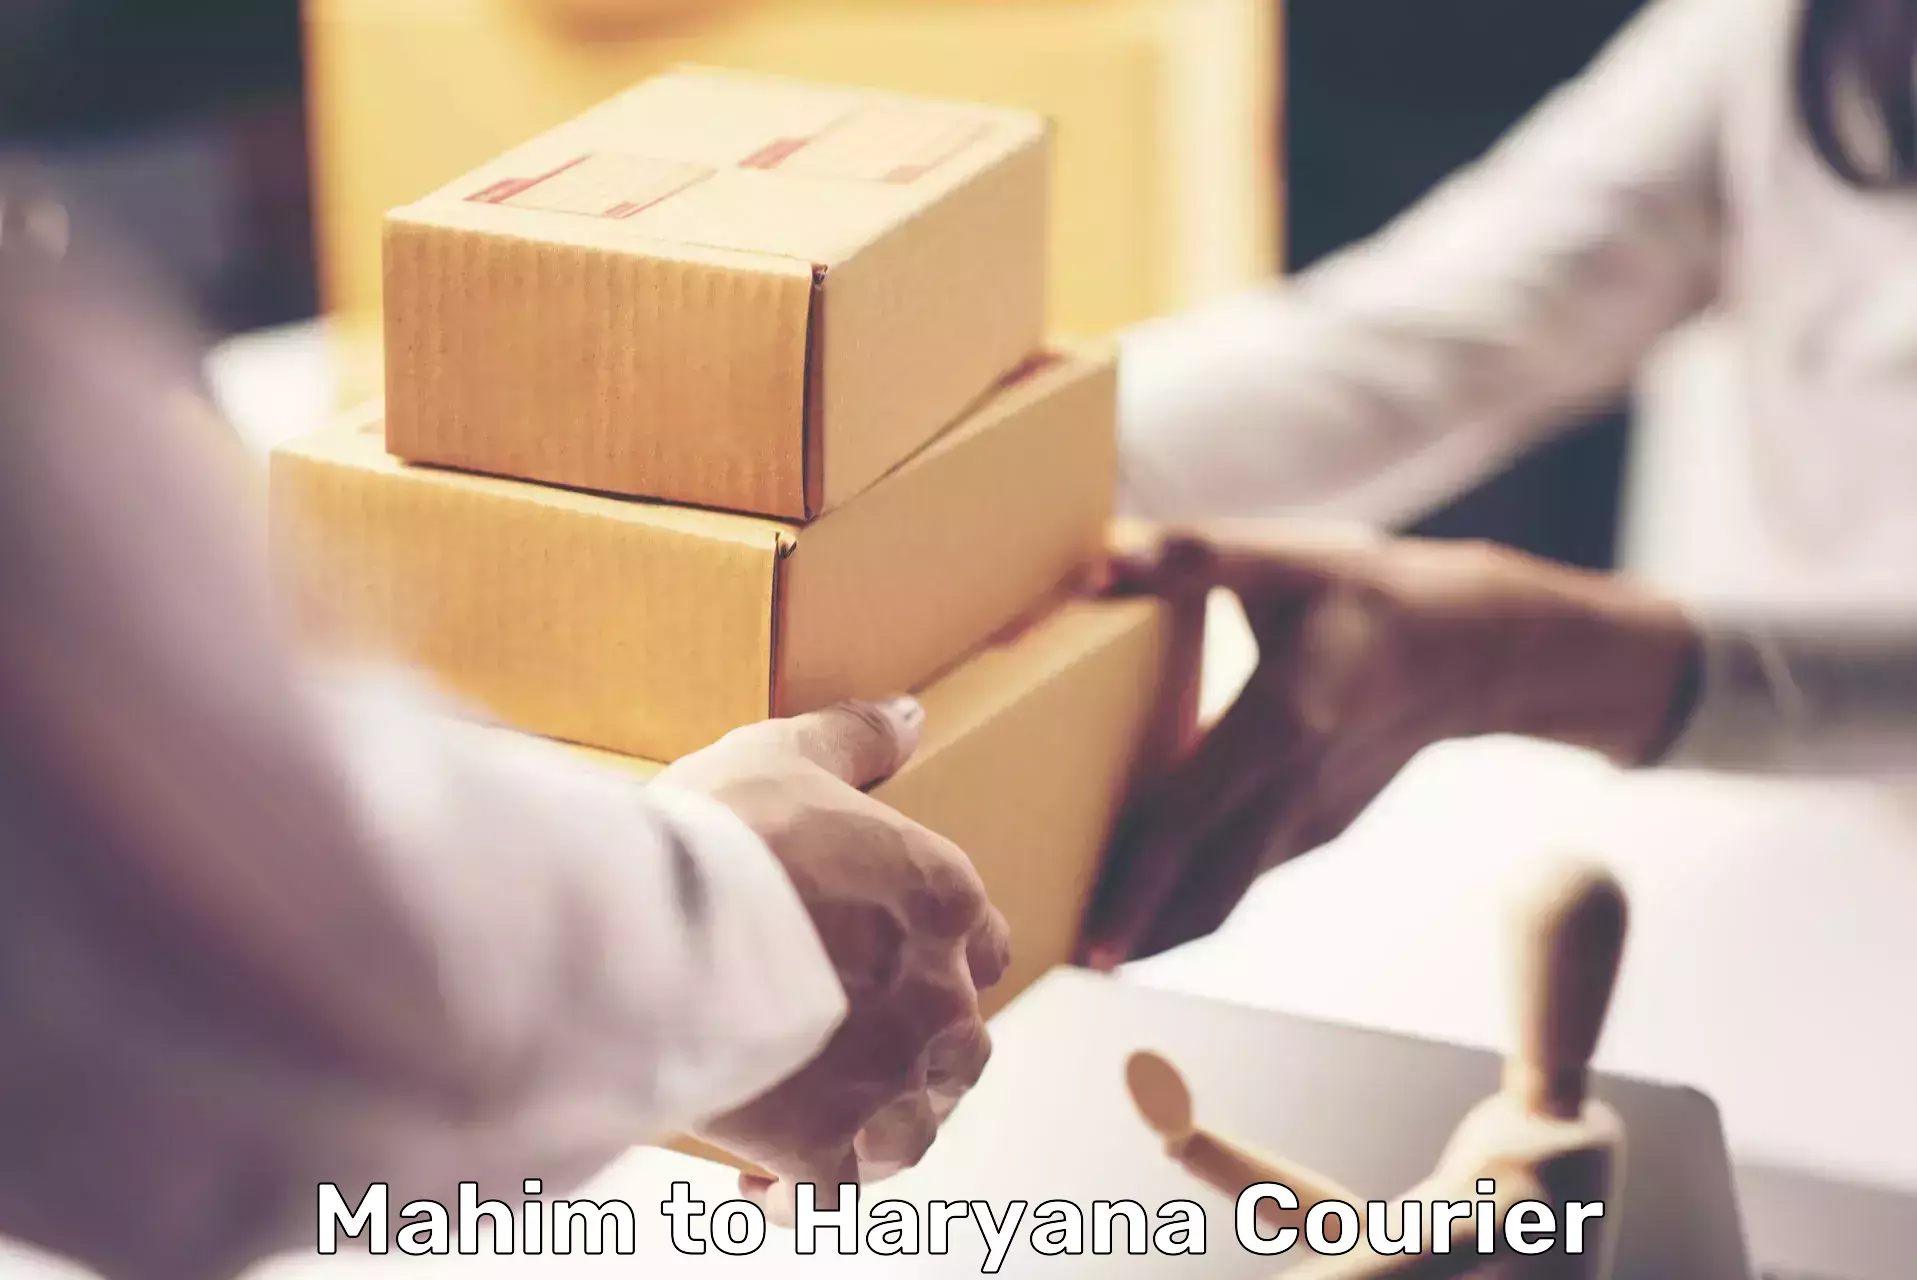 Door-to-door freight service Mahim to Charkhari